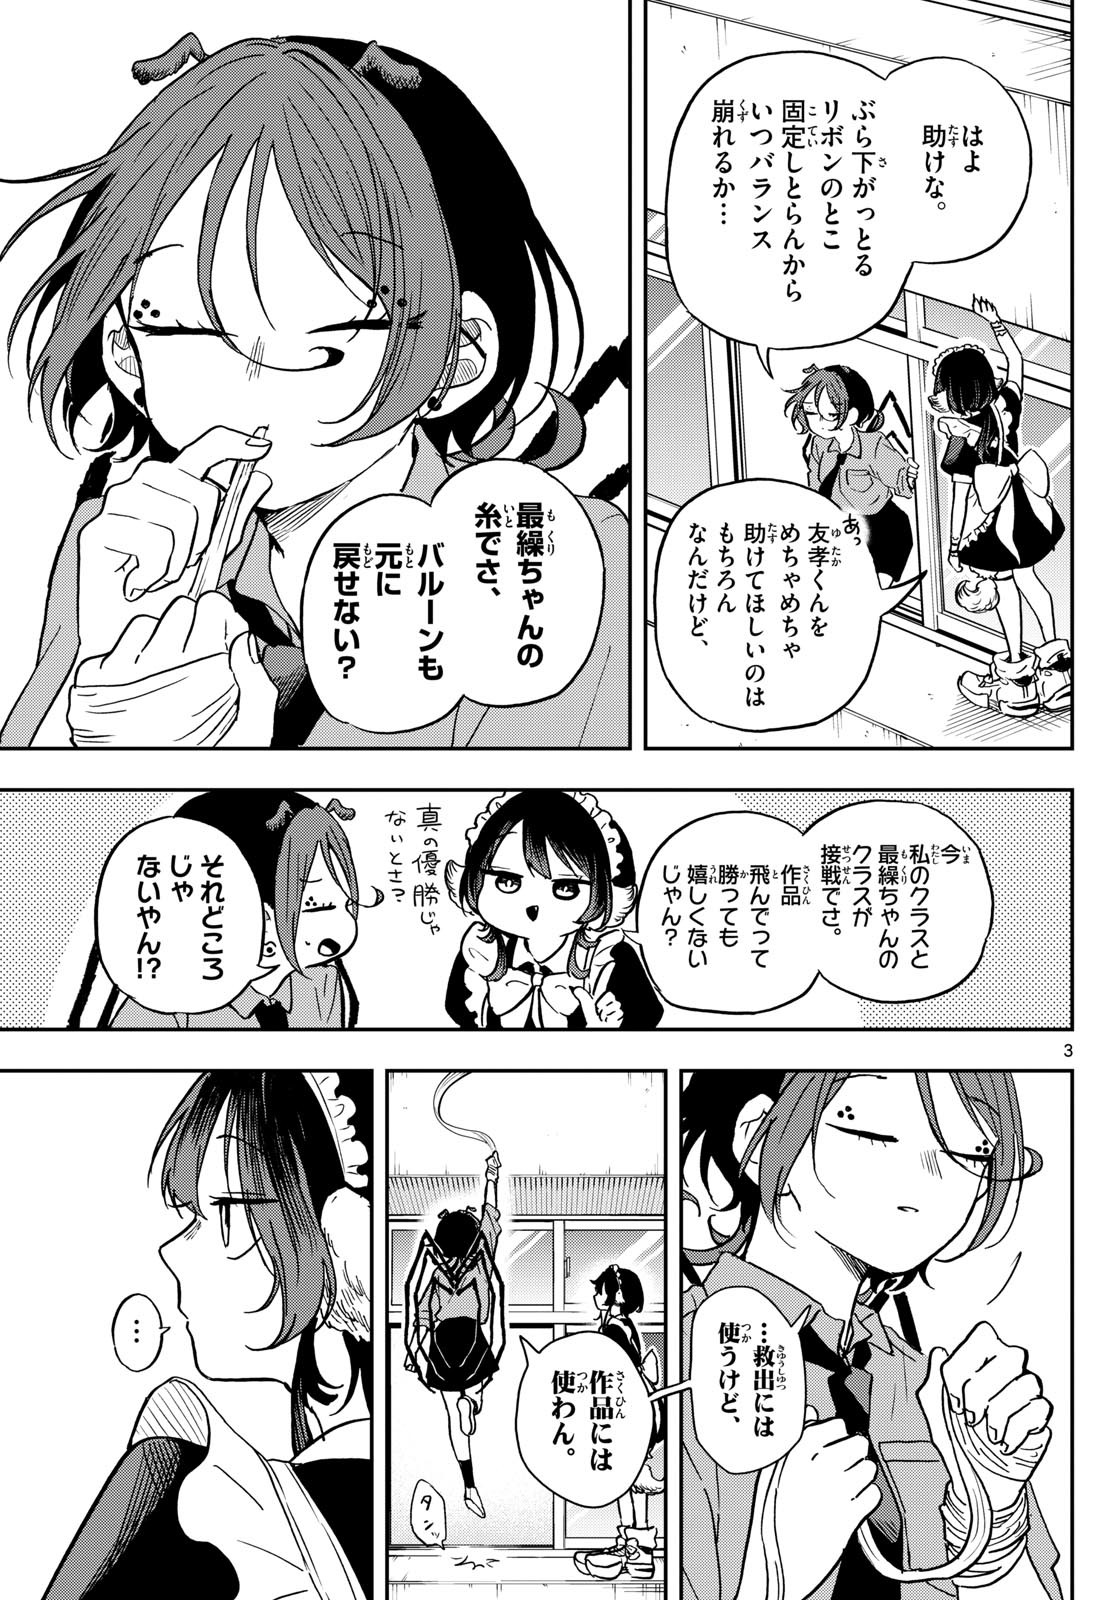 Omori Tsumiki to Kinichijou. - Chapter 32 - Page 3